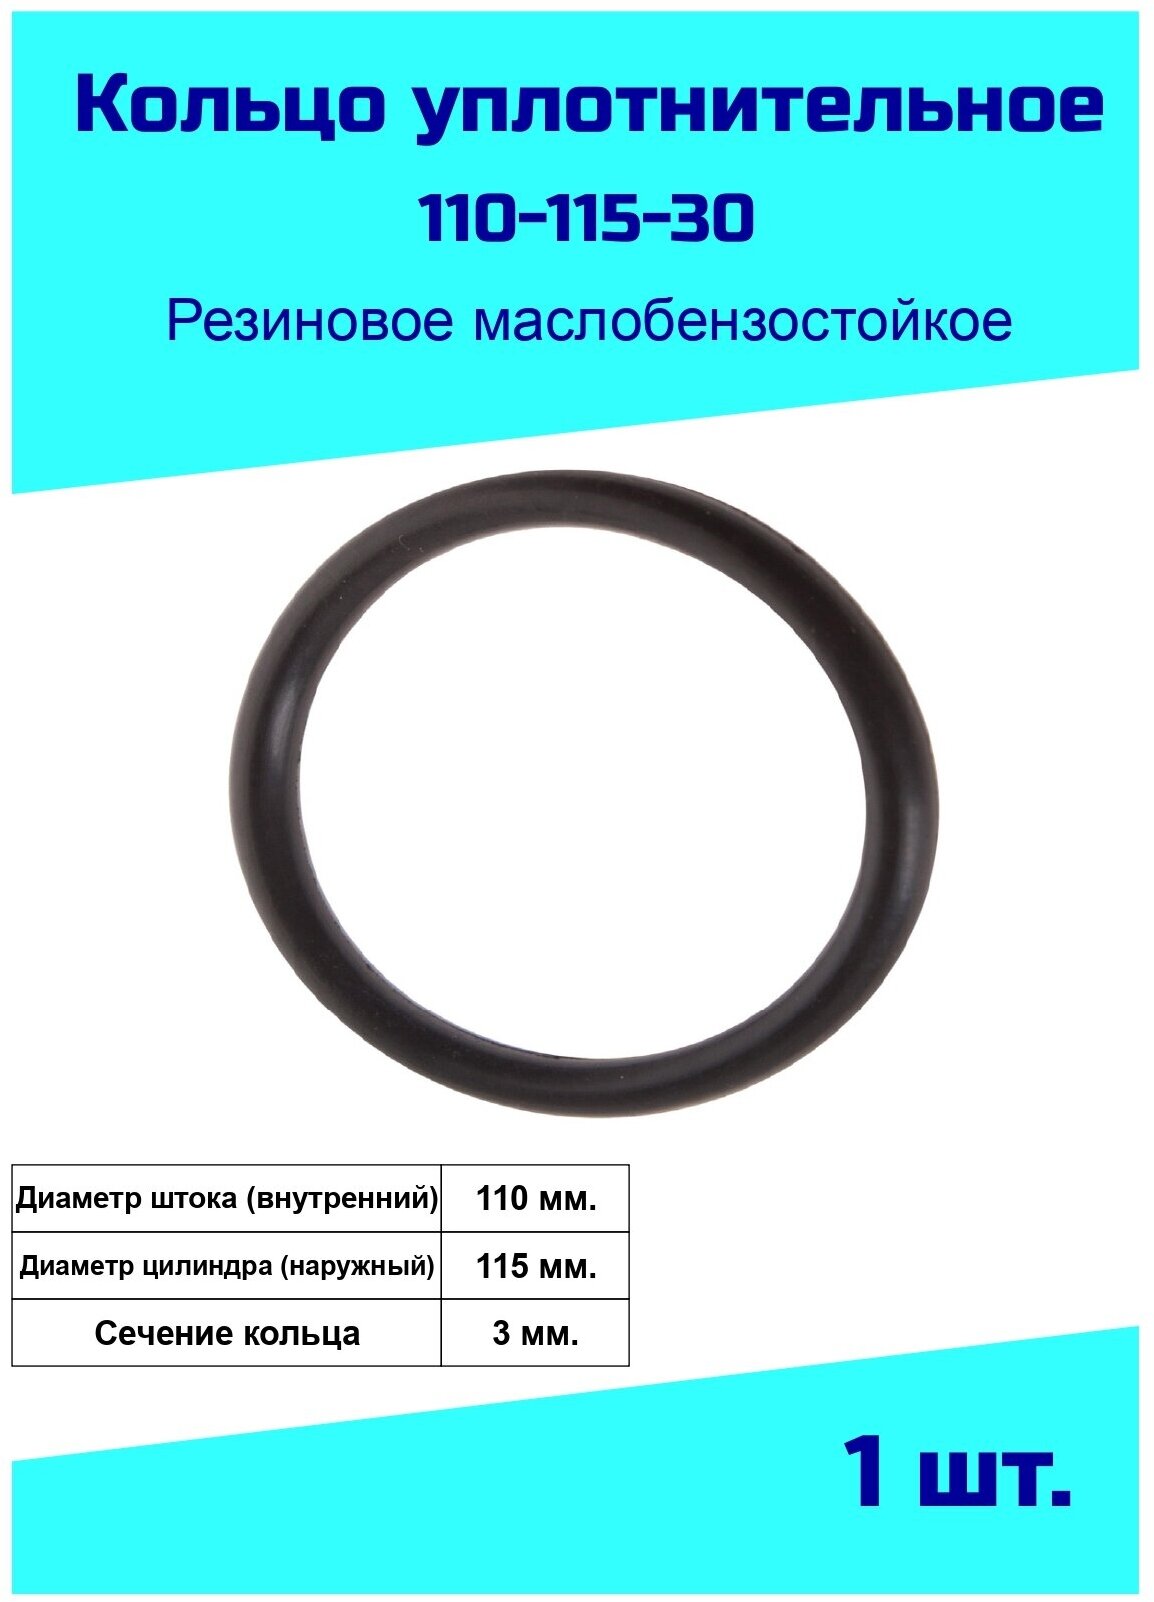 Кольцо уплотнительное 110 мм. резиновое